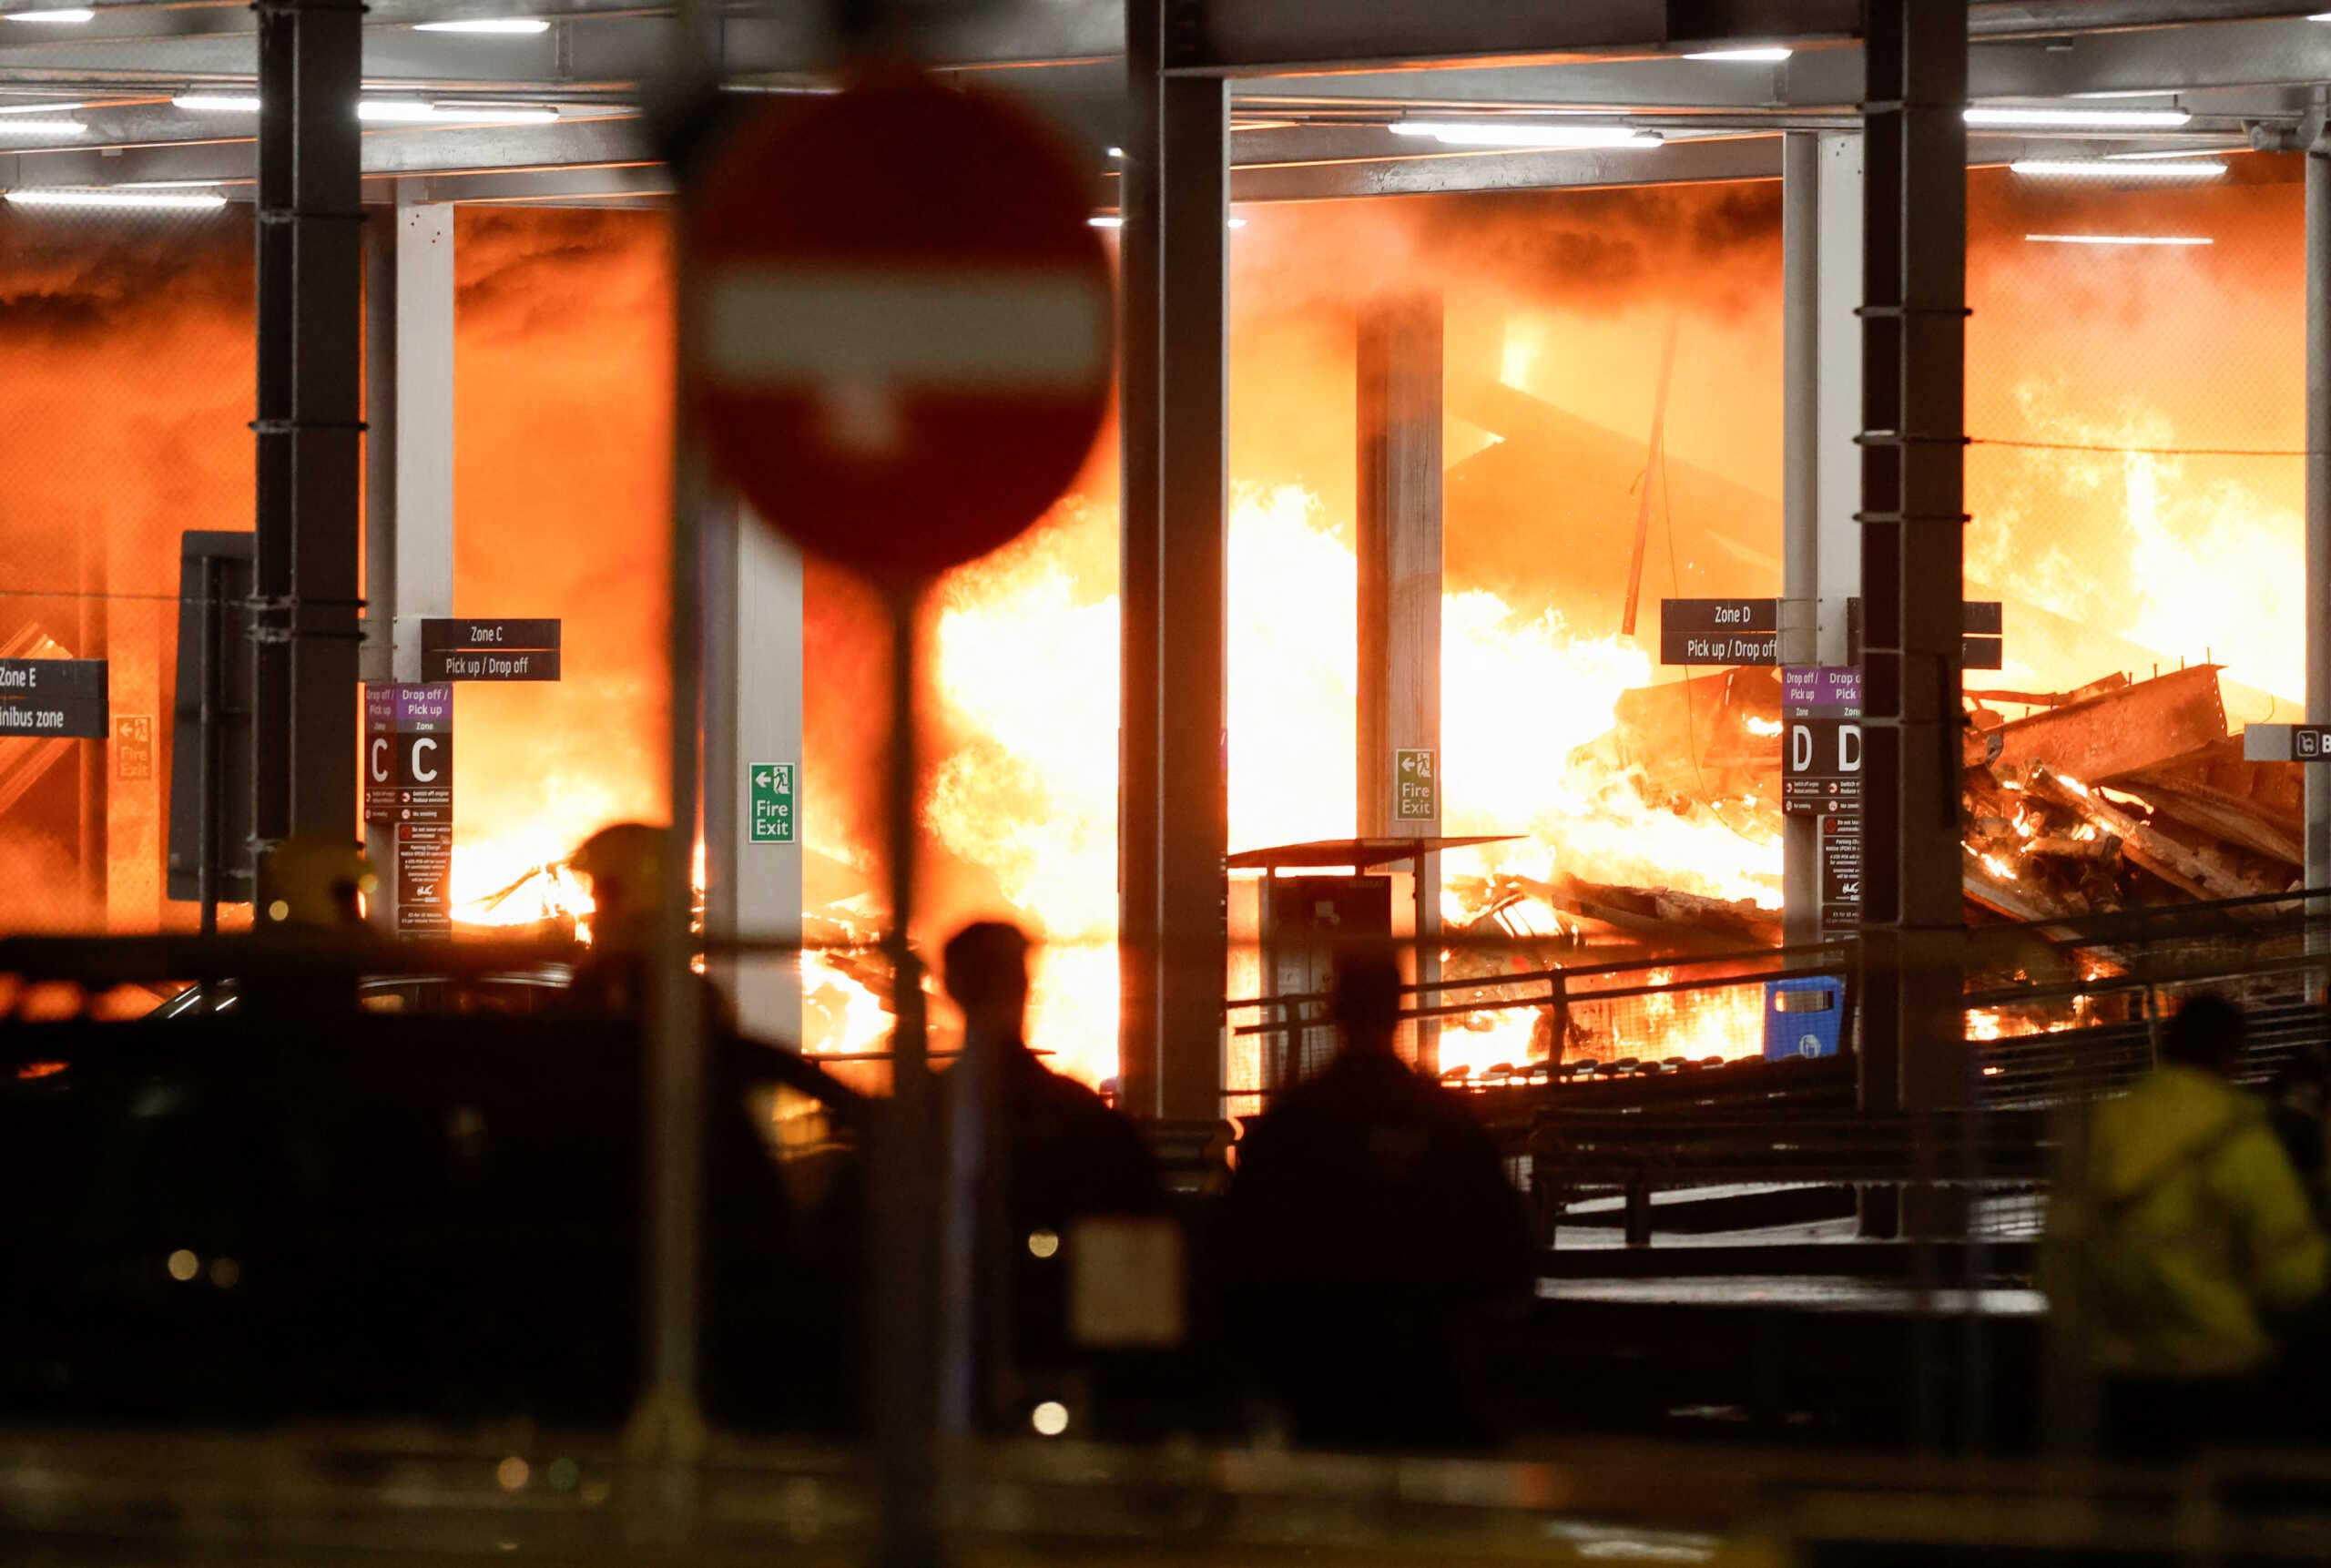 Λούτον: Ξαναρχίζουν οι πτήσεις μετά την τεράστια φωτιά στο πάρκινγκ του λονδρέζικου αεροδρομίου